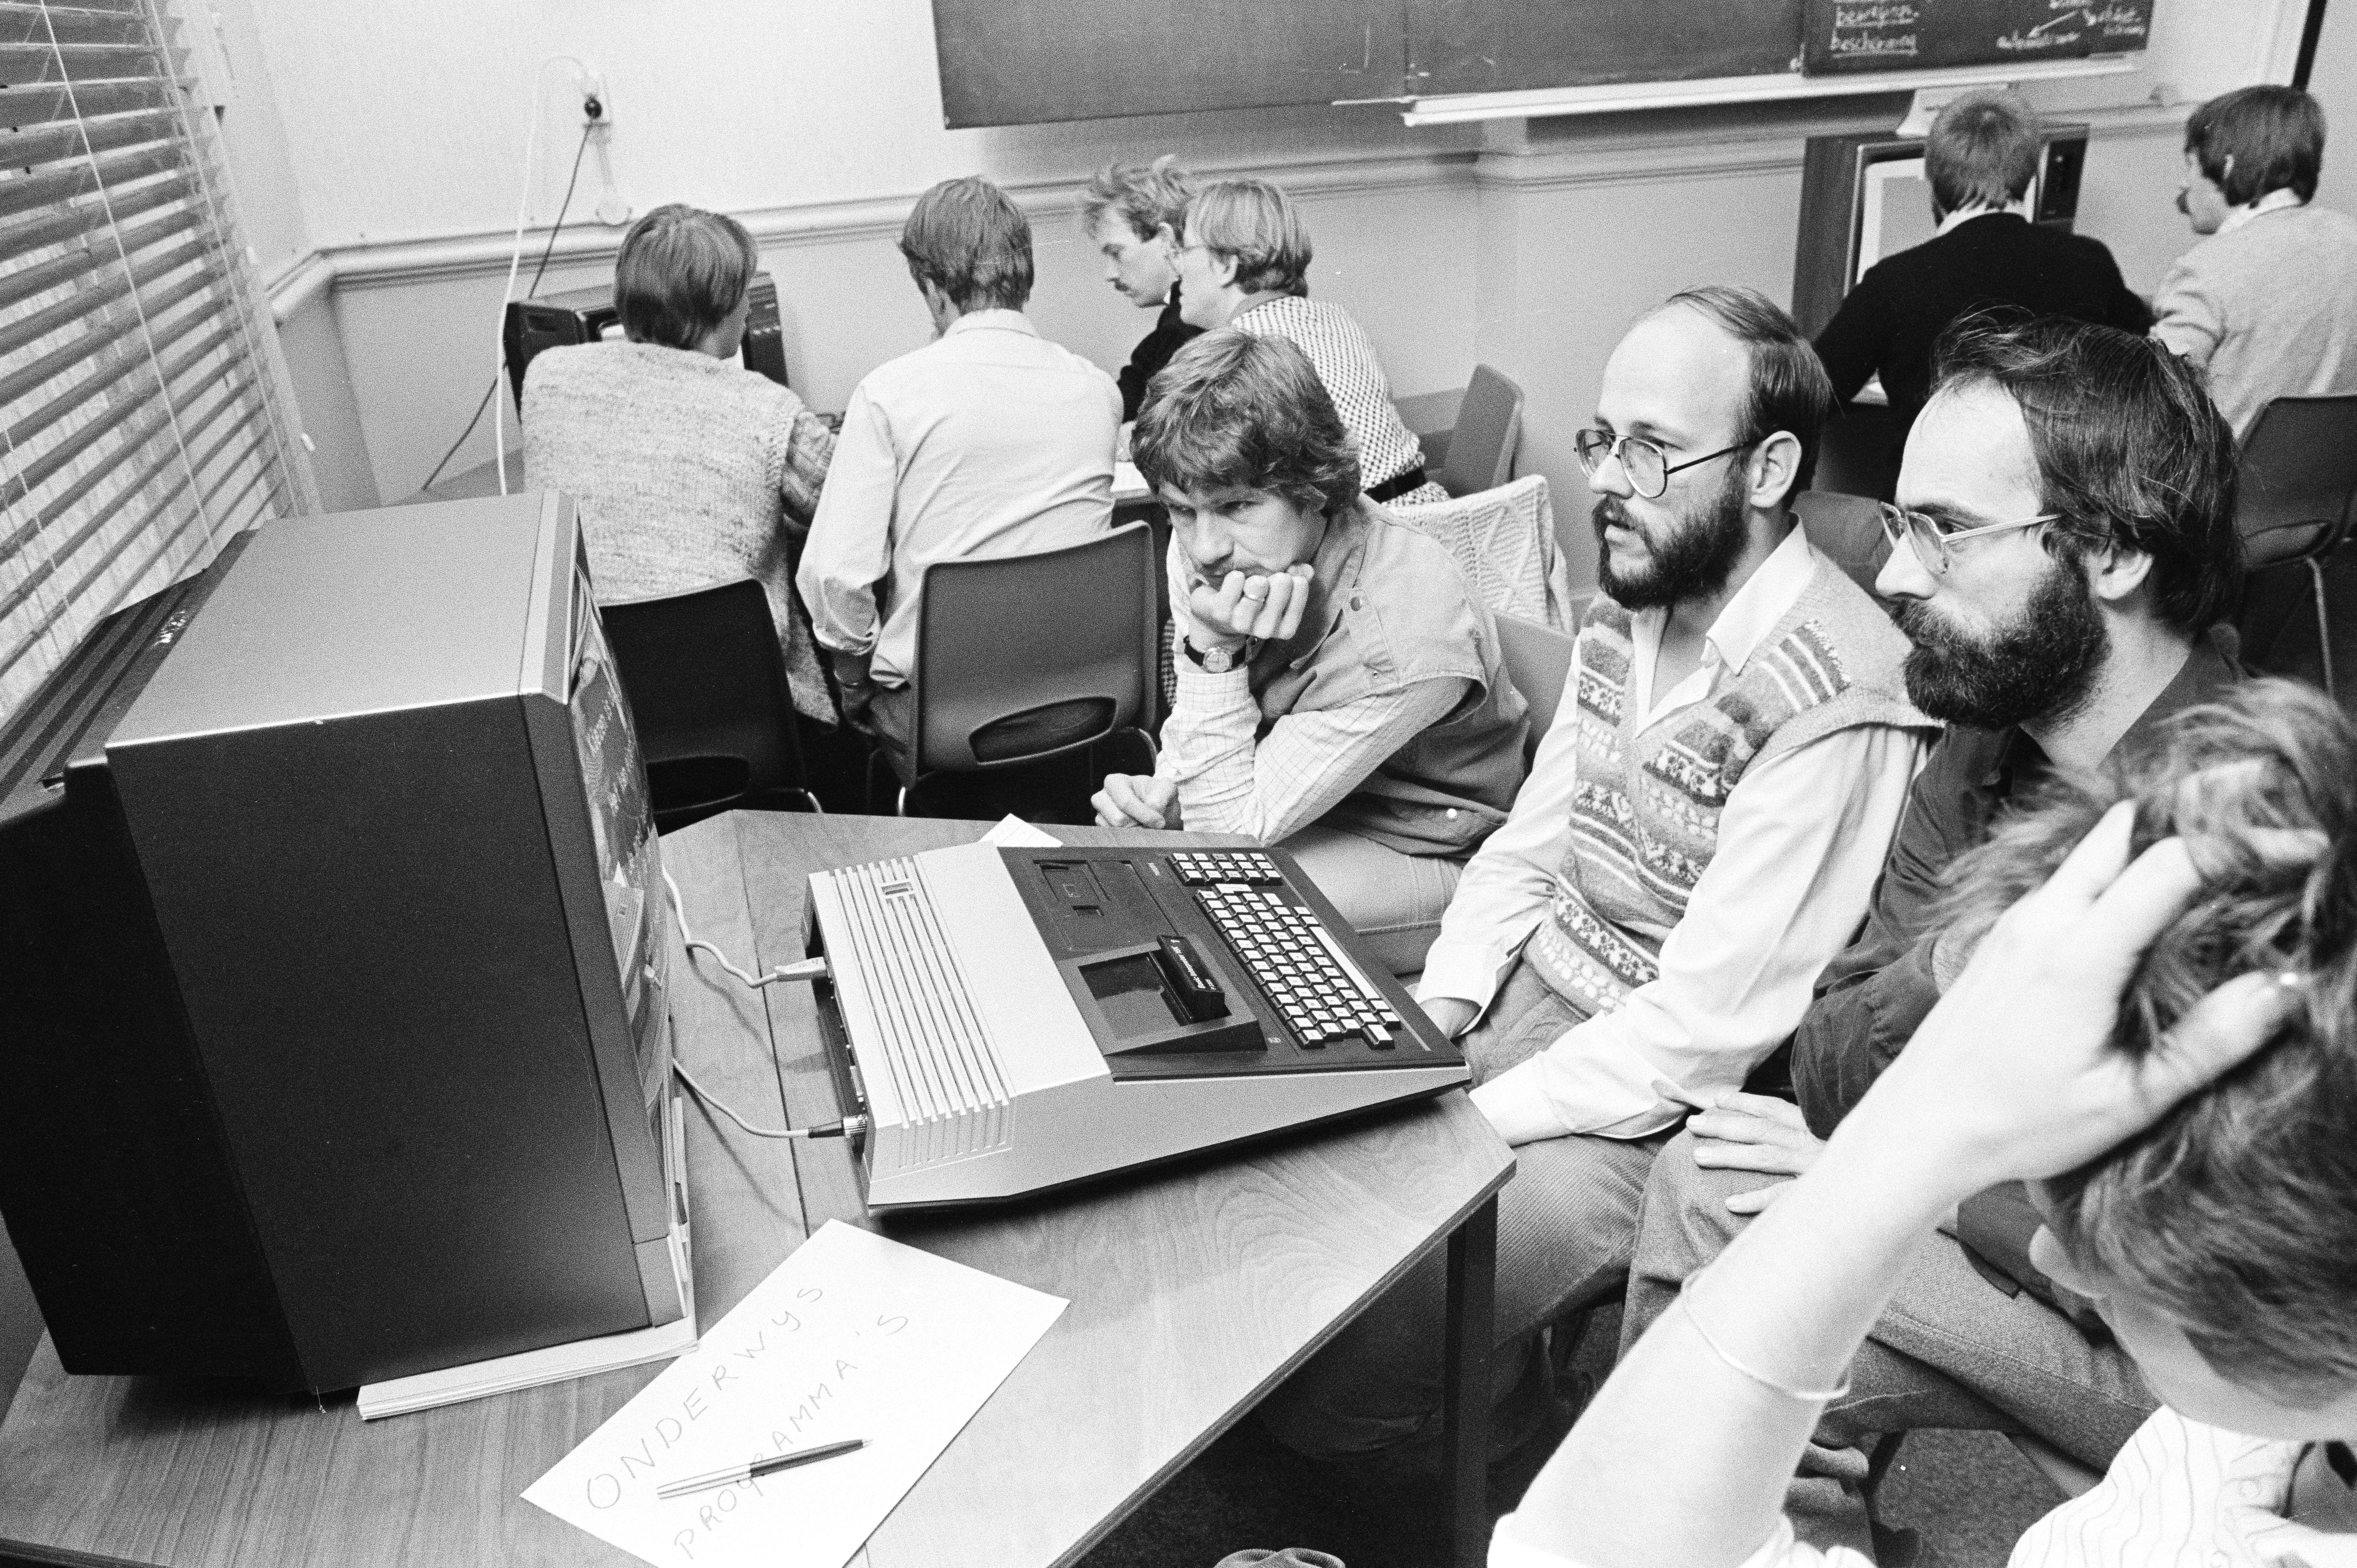 Vier mannen kijken vragend naar een computer